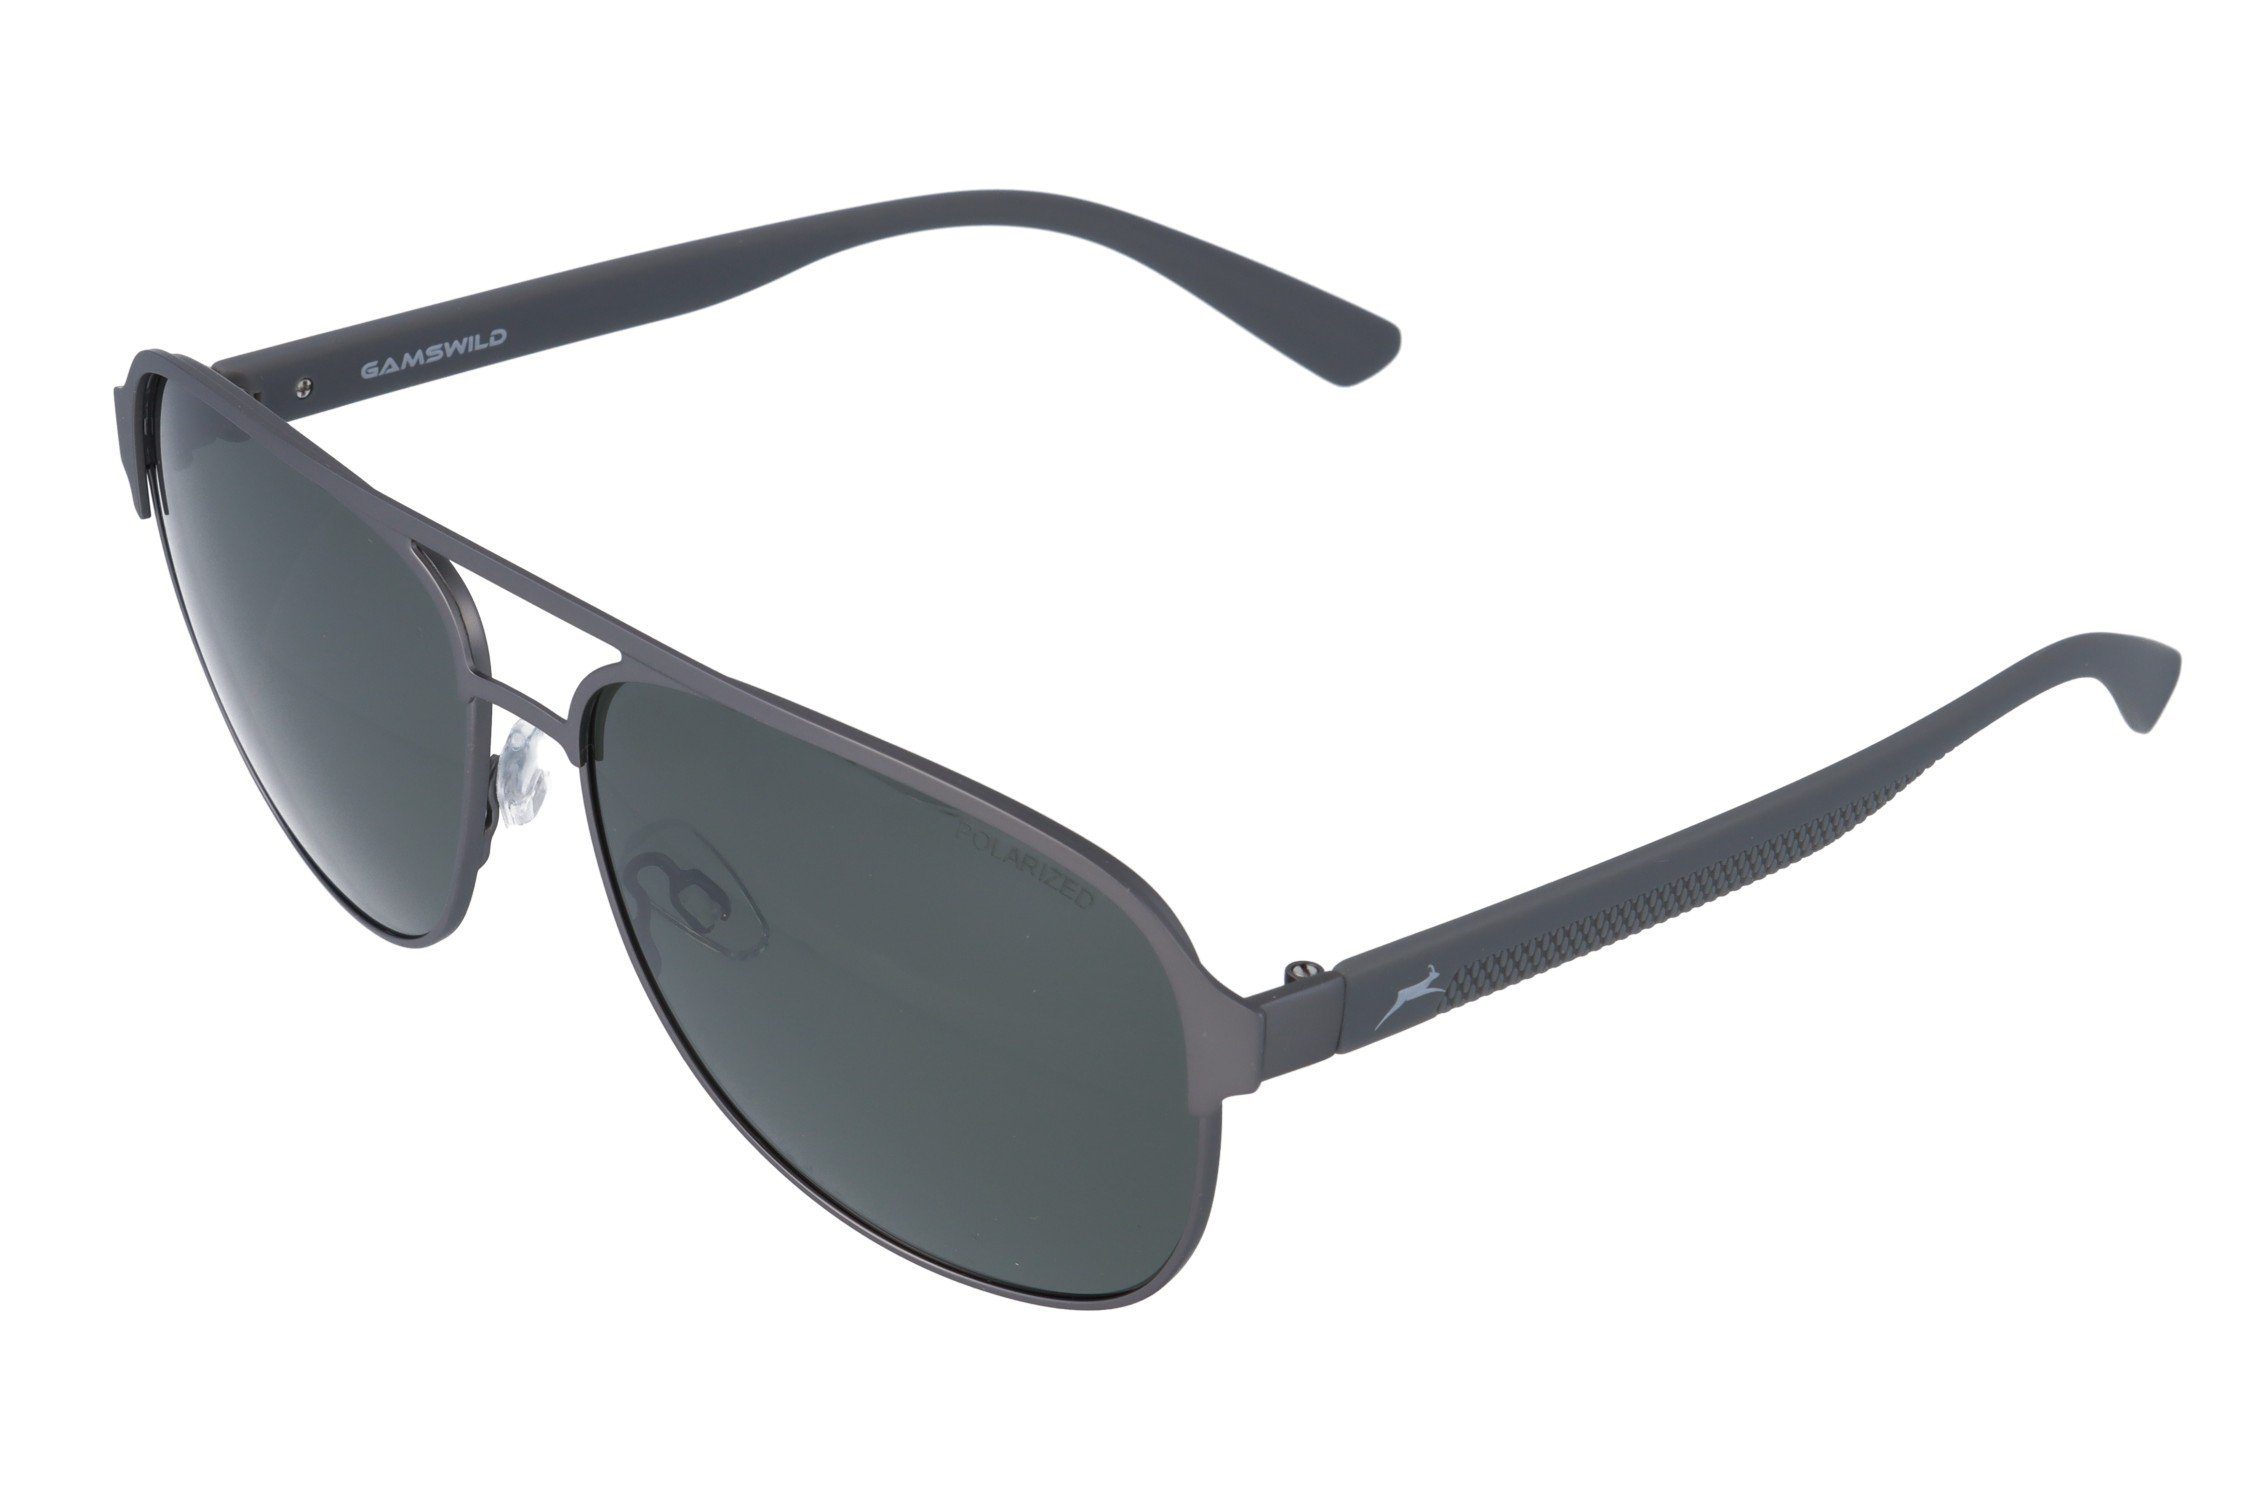 Gamswild Pilotenbrille WM4040 GAMSSTYLE Sonnenbrille Mode Brille Unisex Vollmetallrahmen grau